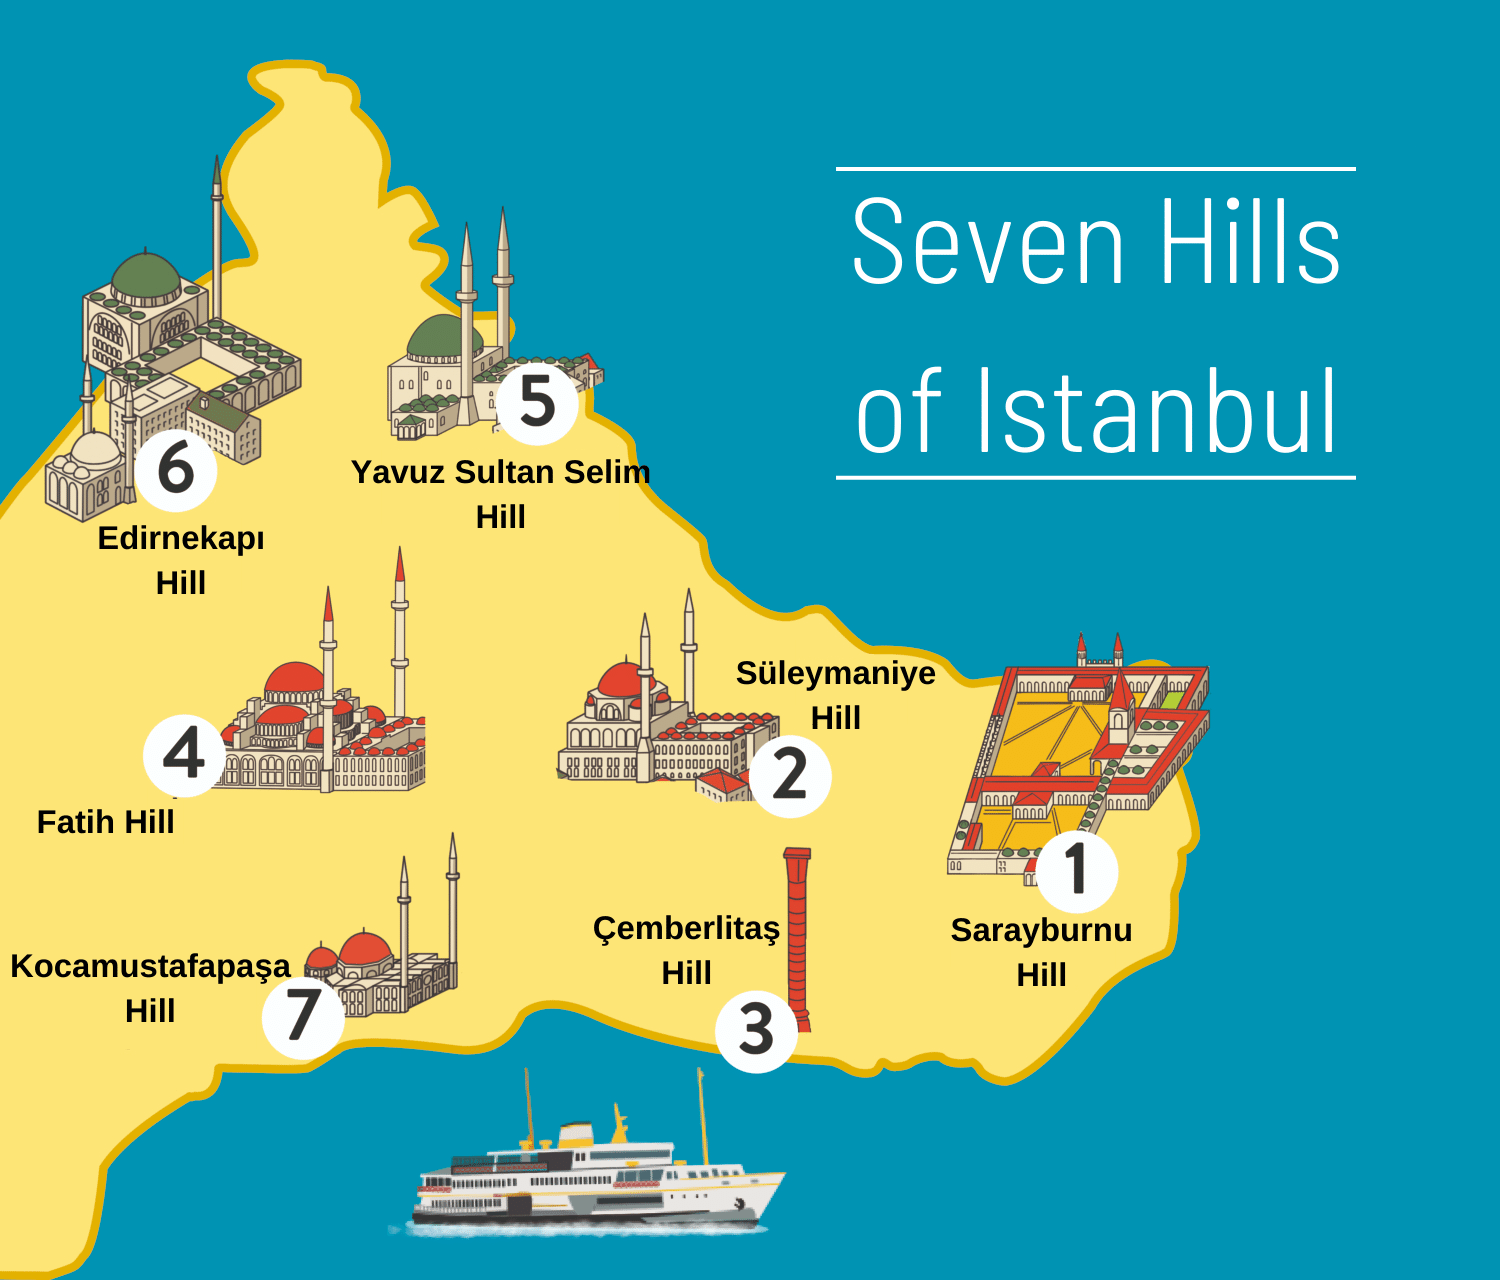 Центр стамбула на карте. Туристическая карта Стамбула. Достопримечательности Стамбула на карте. Карта Стамбула по районам. Карта центра Стамбула с достопримечательностями.